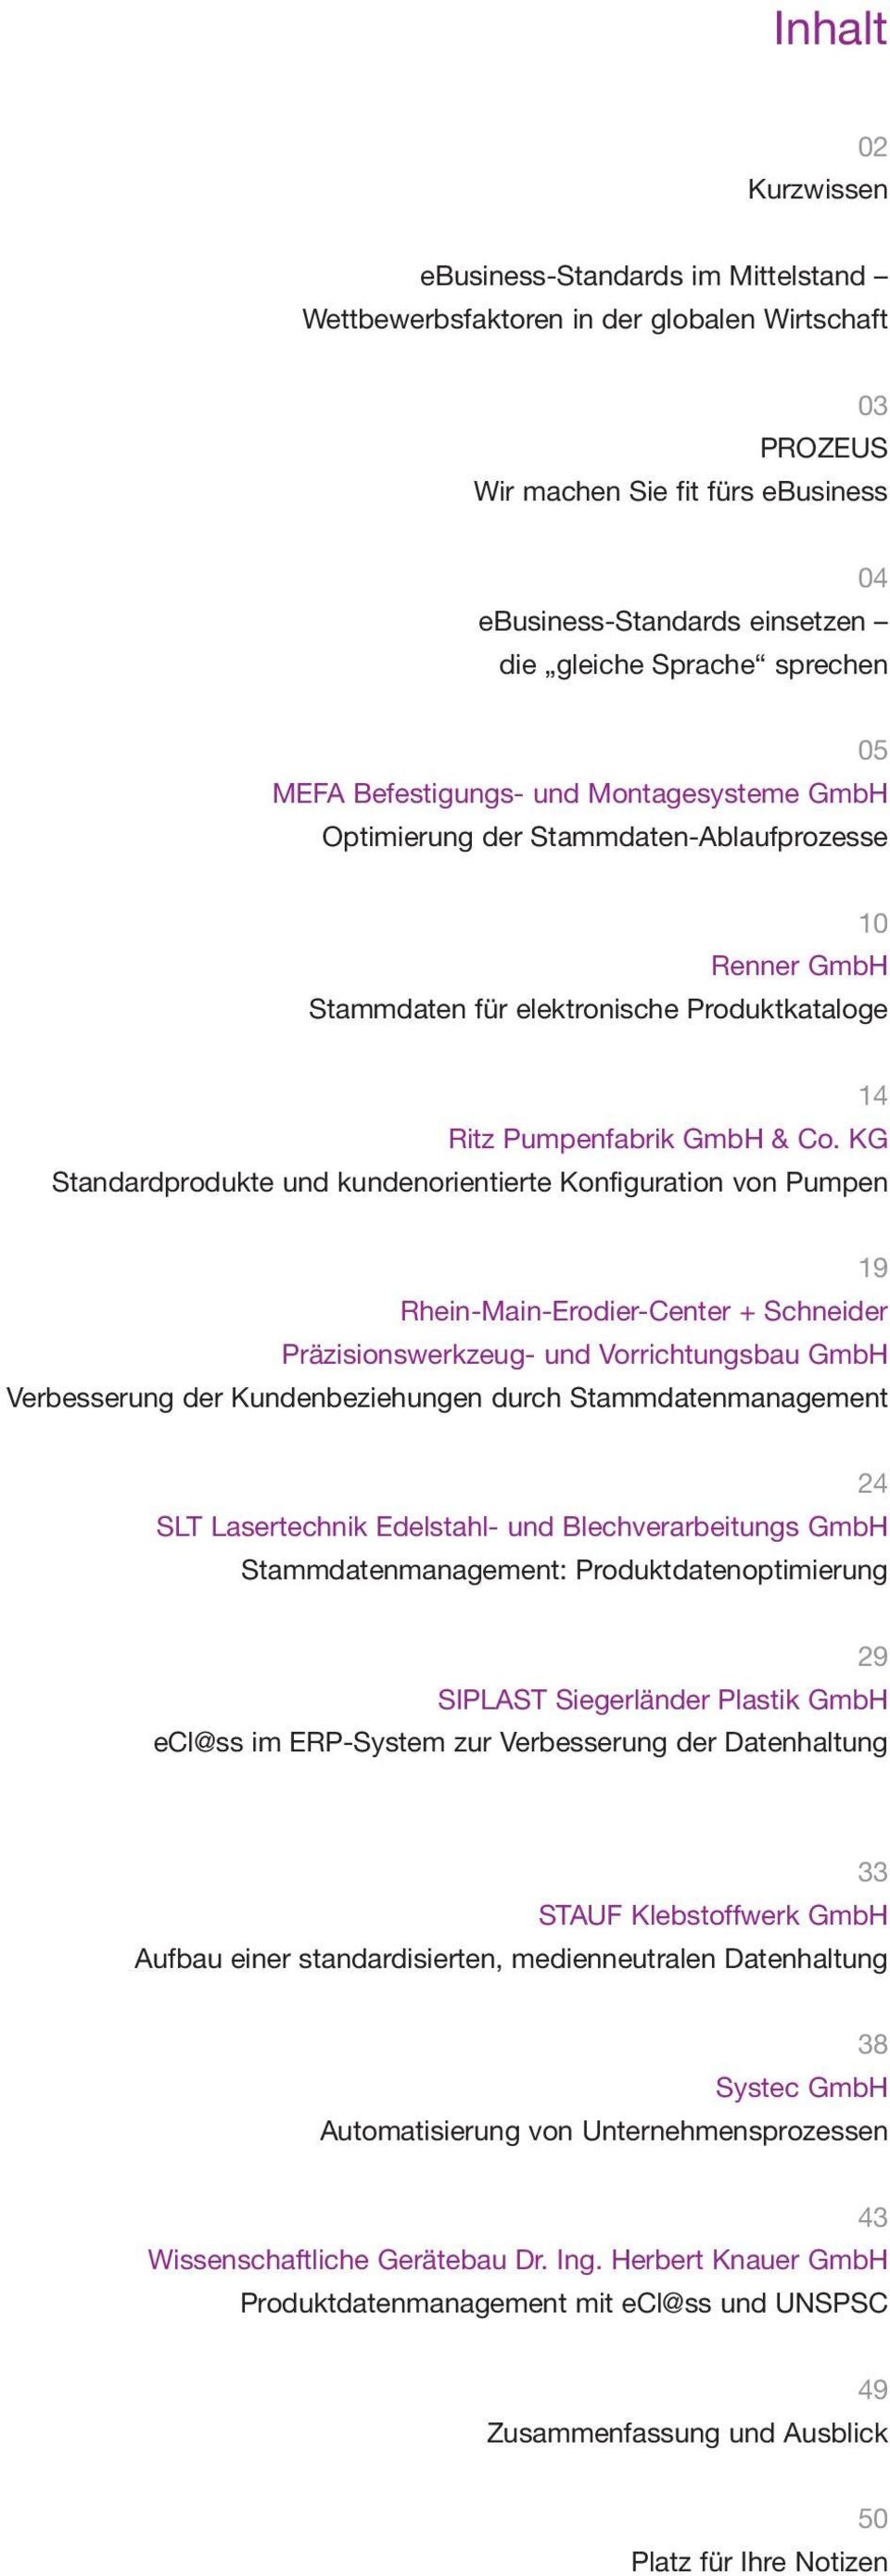 KG Standardprodukte und kundenorientierte Konfiguration von Pumpen 19 Rhein-Main-Erodier-Center + Schneider Präzisionswerkzeug- und Vorrichtungsbau GmbH Verbesserung der Kundenbeziehungen durch